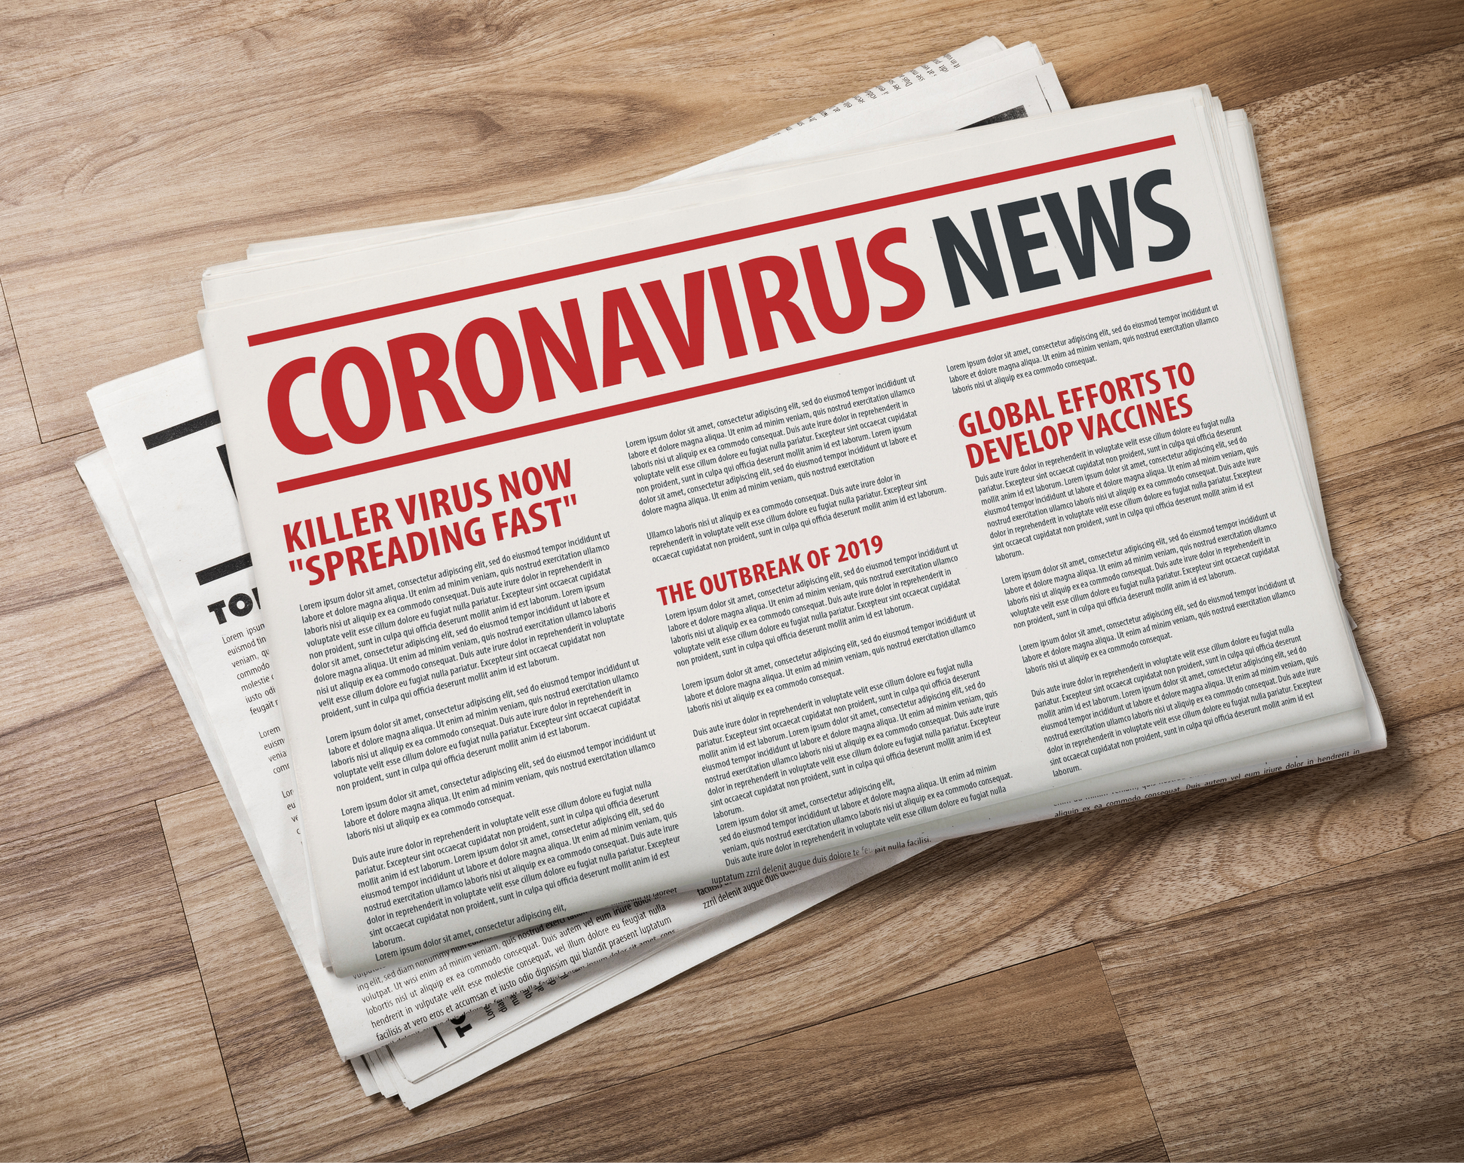 Coronavirus 2019 – May 5, 2020 update